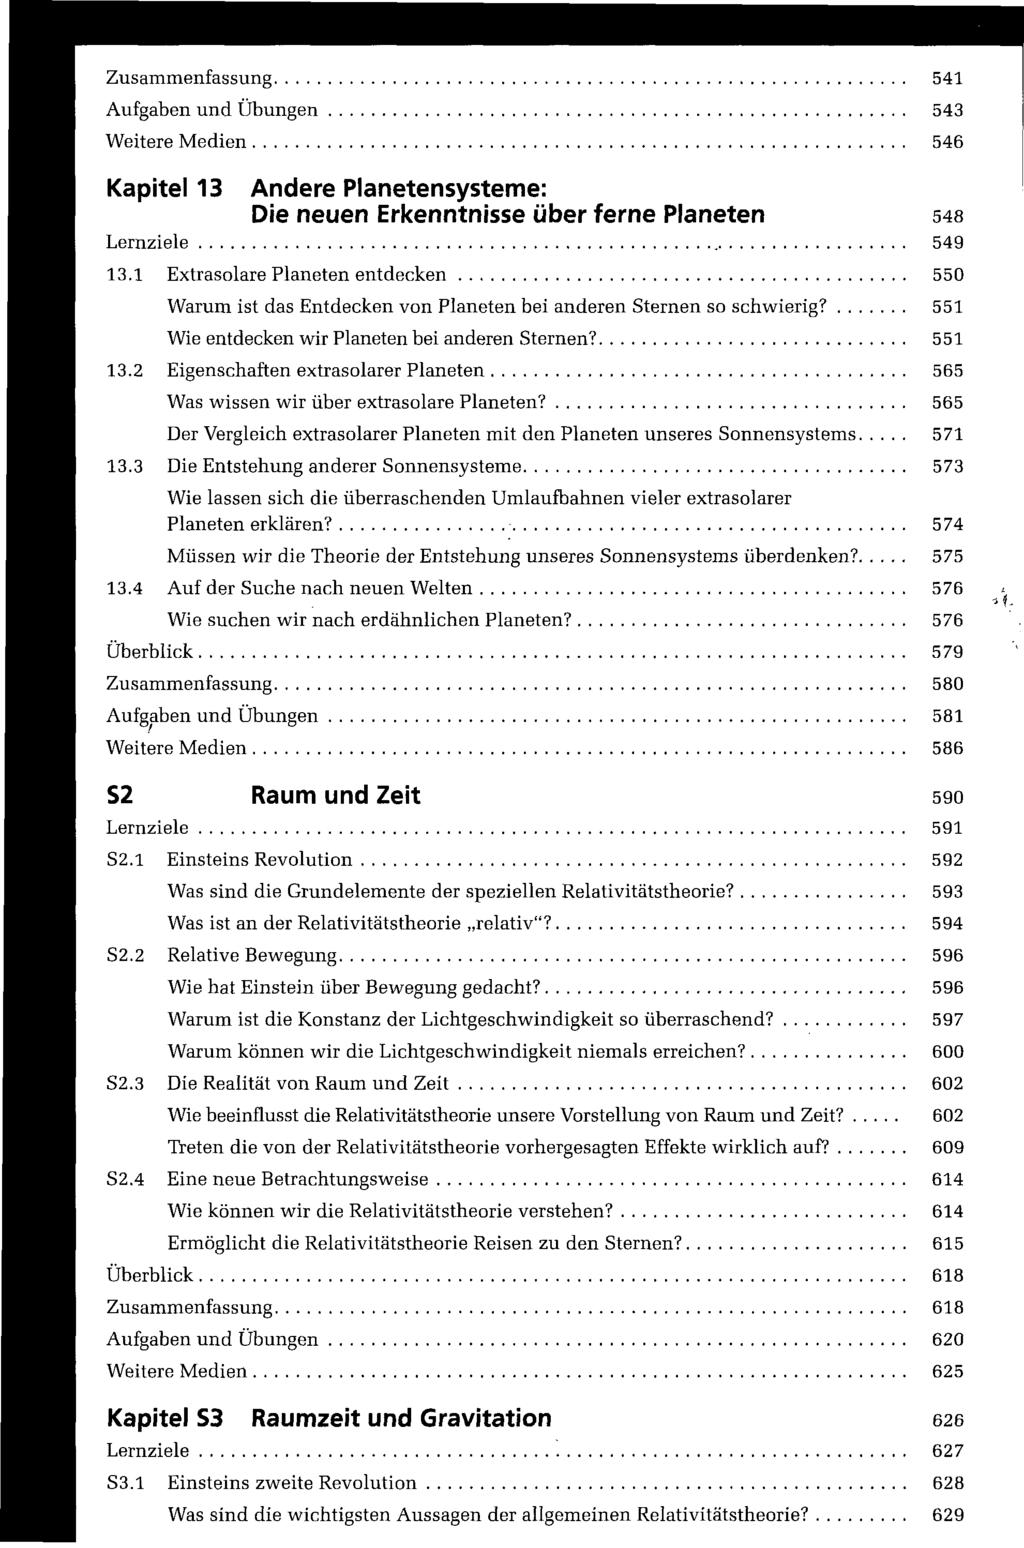 Zusammenfassung 541 Aufgaben und Übungen 543 Weitere Medien 546 Kapitel 13 Andere Planetensysteme: Die neuen Erkenntnisse über ferne Planeten 548 Lernziele 549 13.